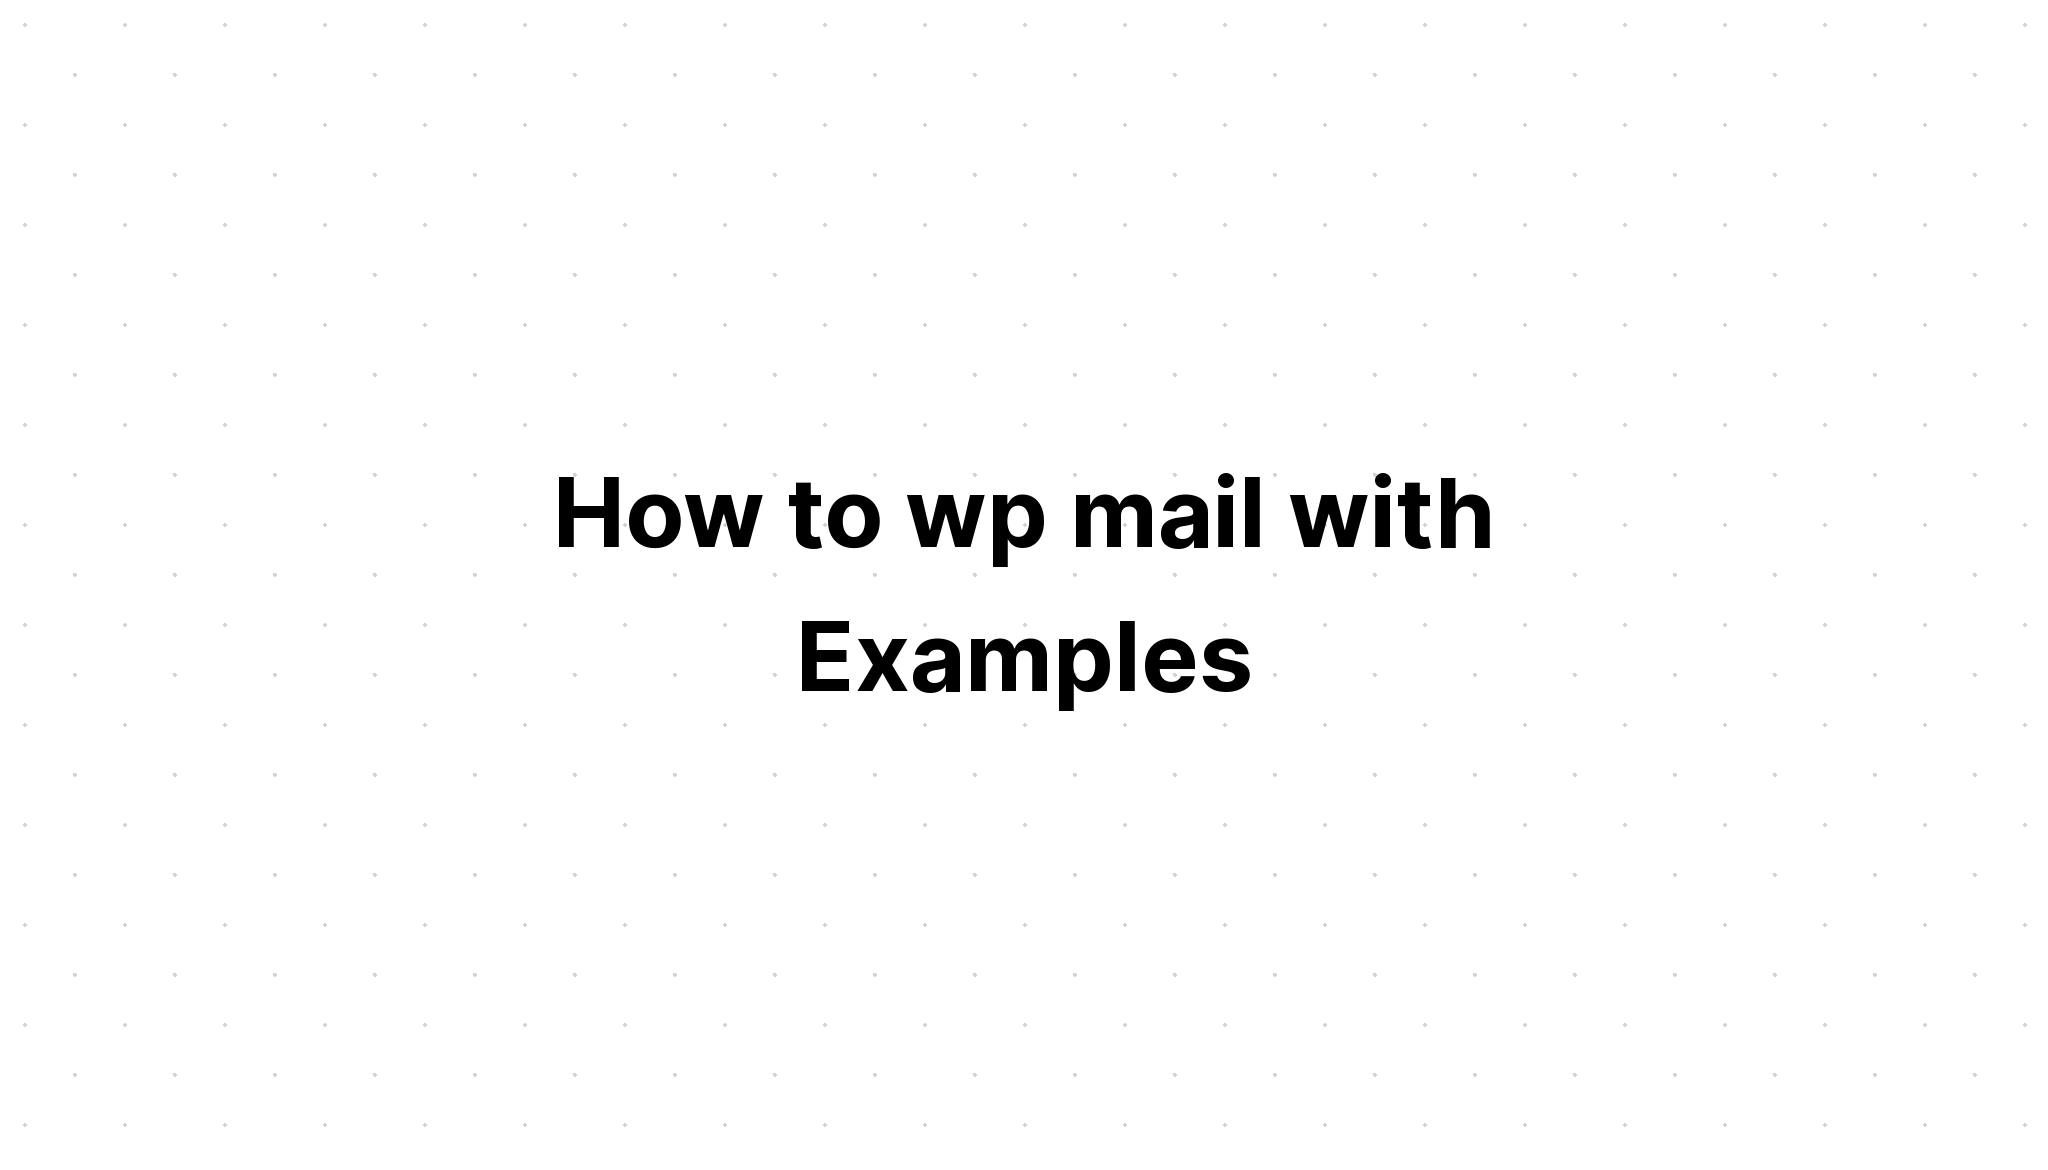 Cara wp email dengan Contoh